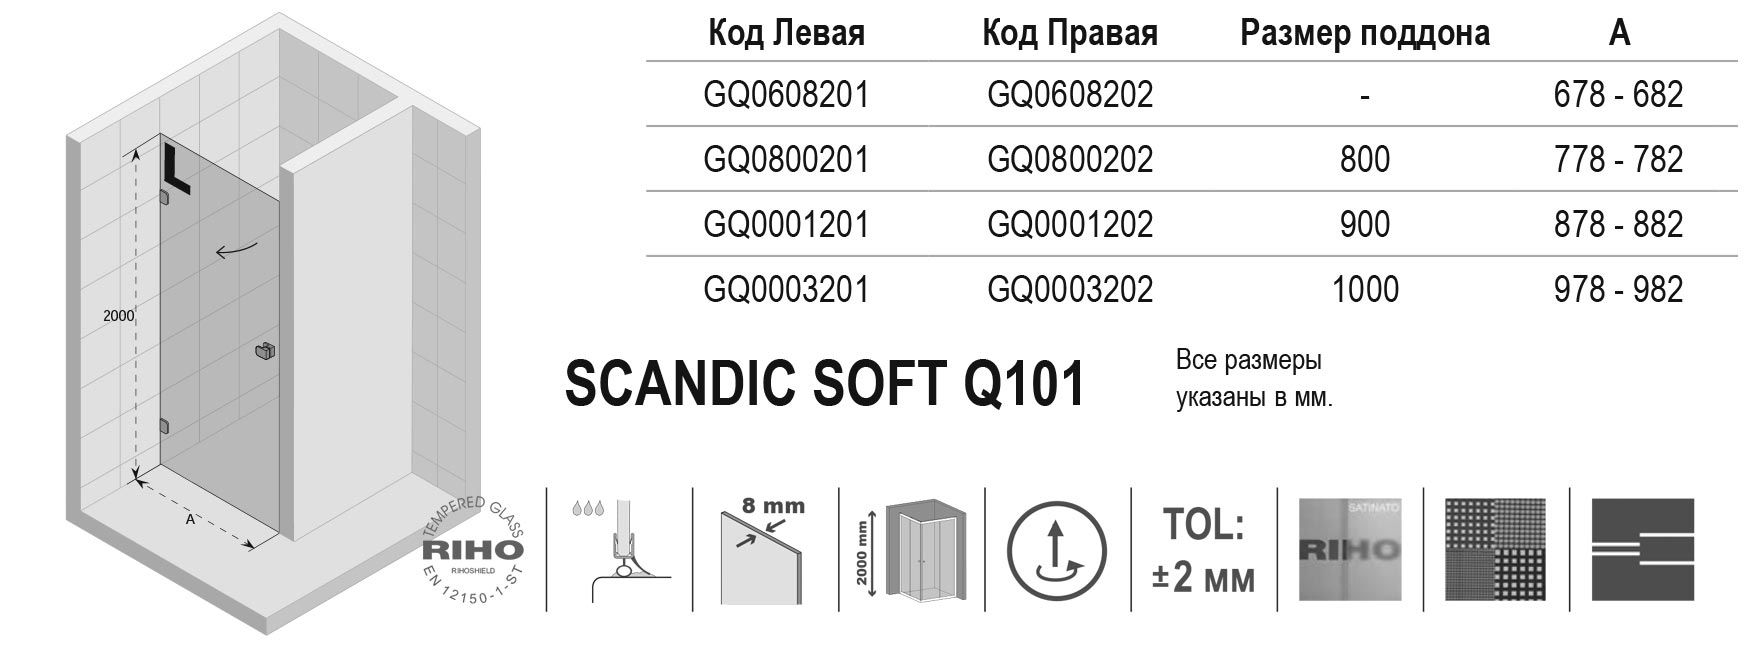 Чертёж Riho Scandic Soft Q101 GQ0001201